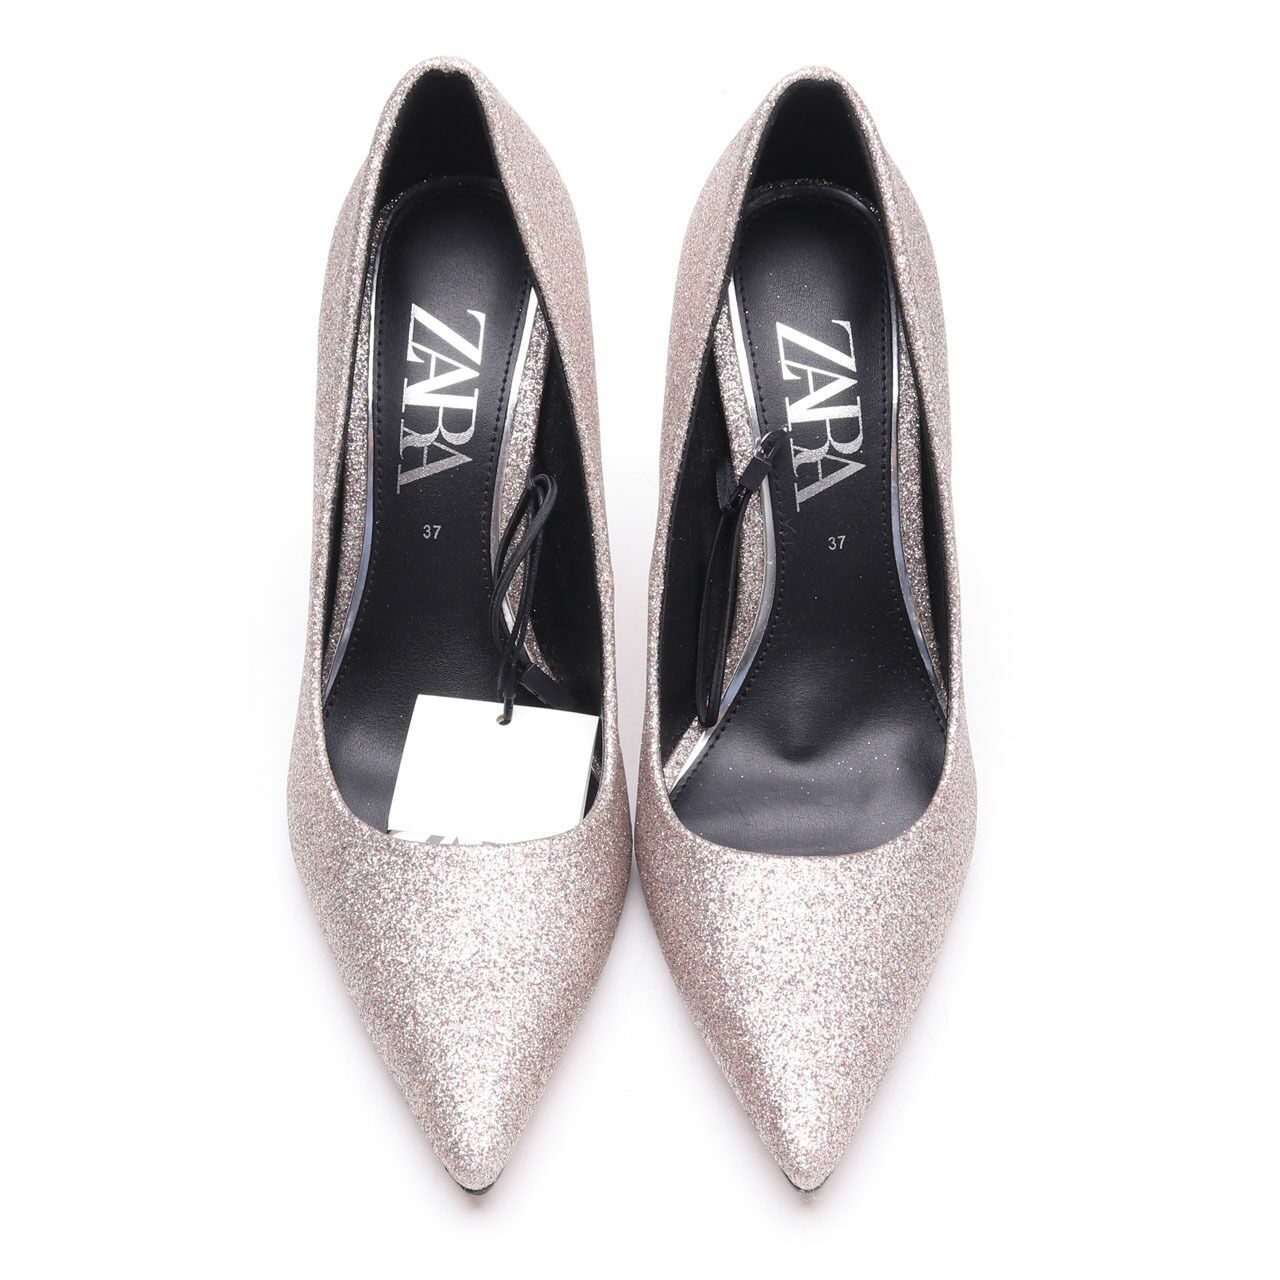 Zara Silver Glitter Heels